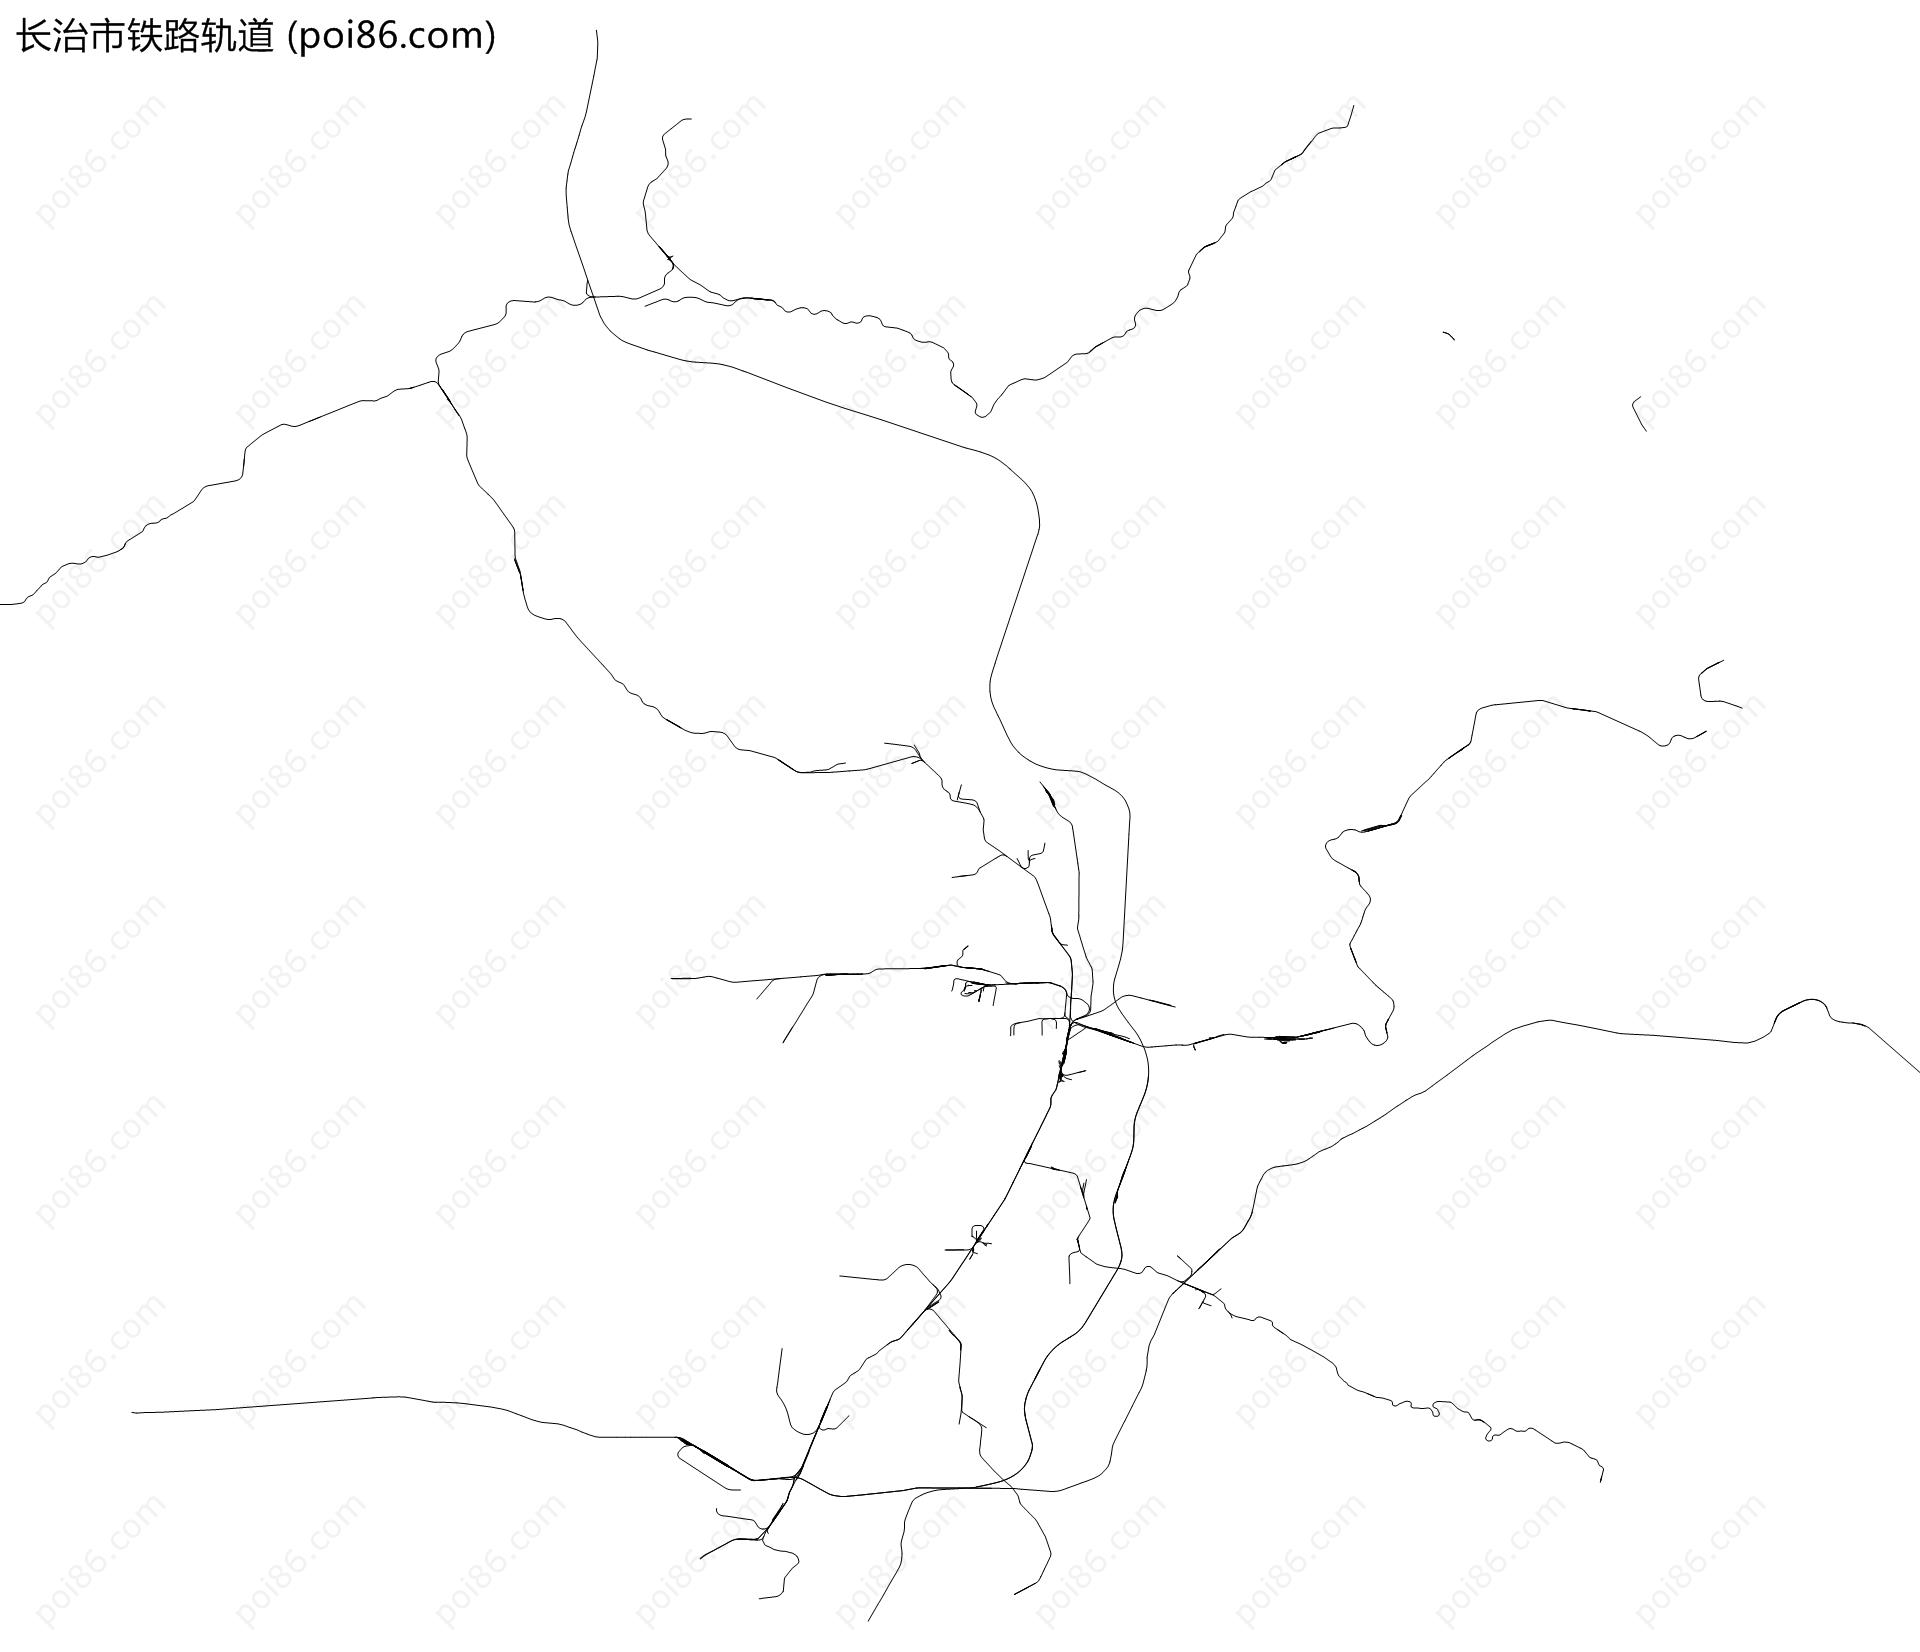 长治市铁路轨道地图